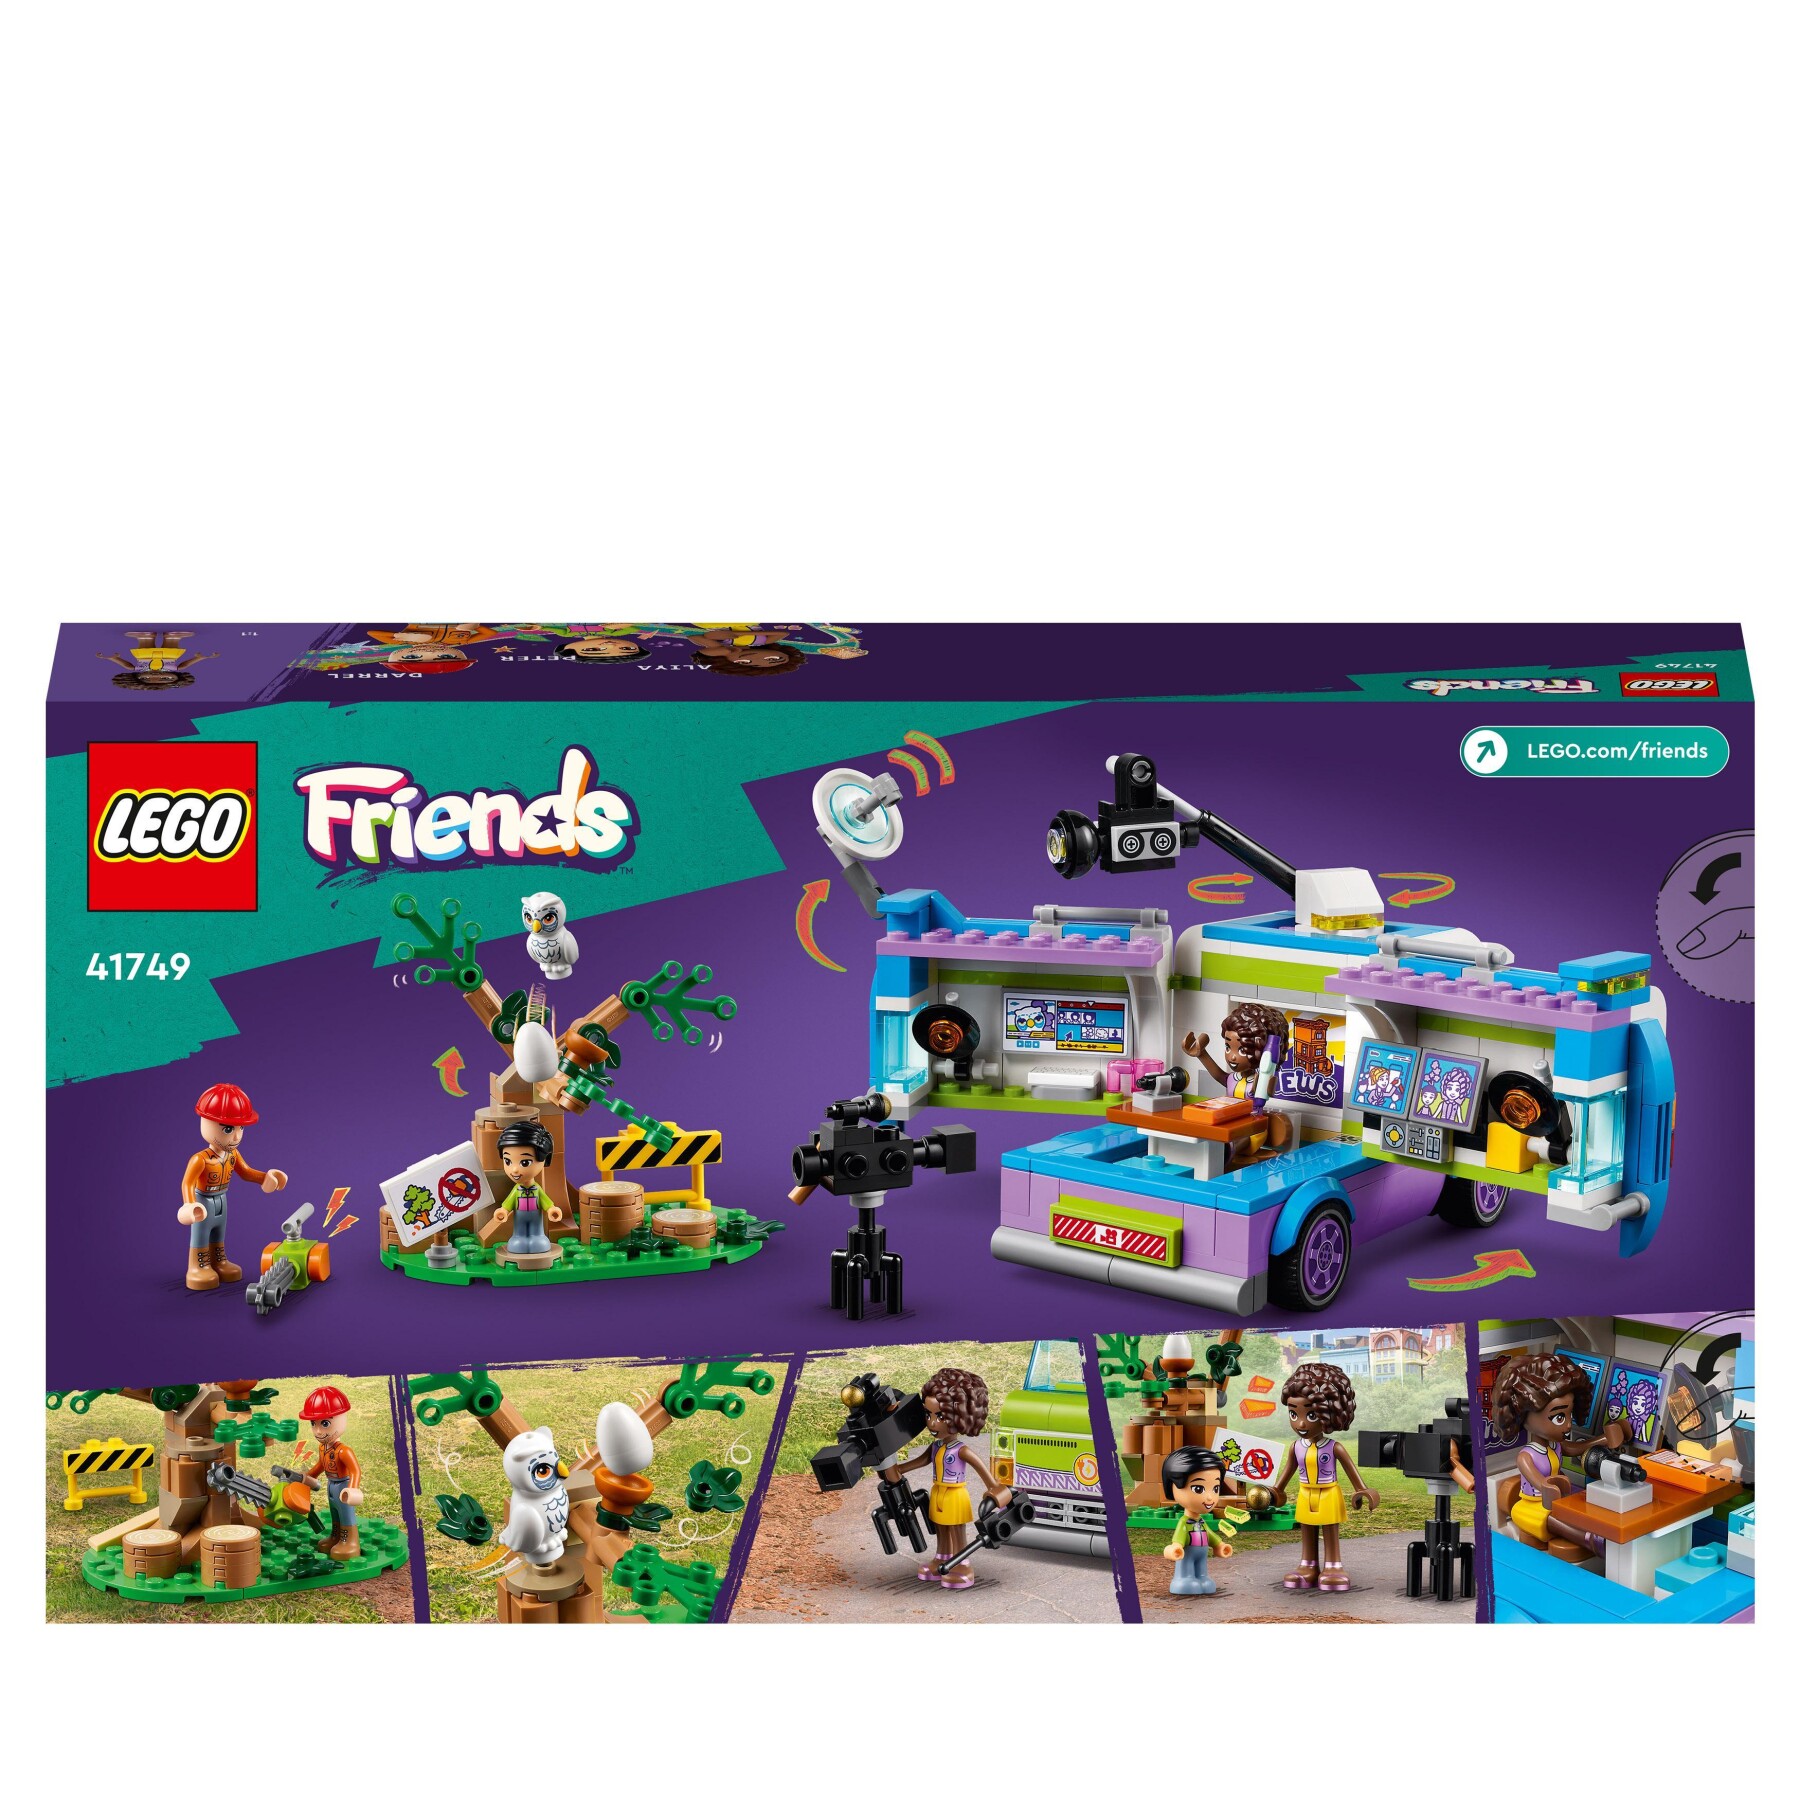 Lego friends 41749 furgone della troupe televisiva, camion giocattolo per le notizie e salvataggio animali, regalo per bambini - LEGO FRIENDS